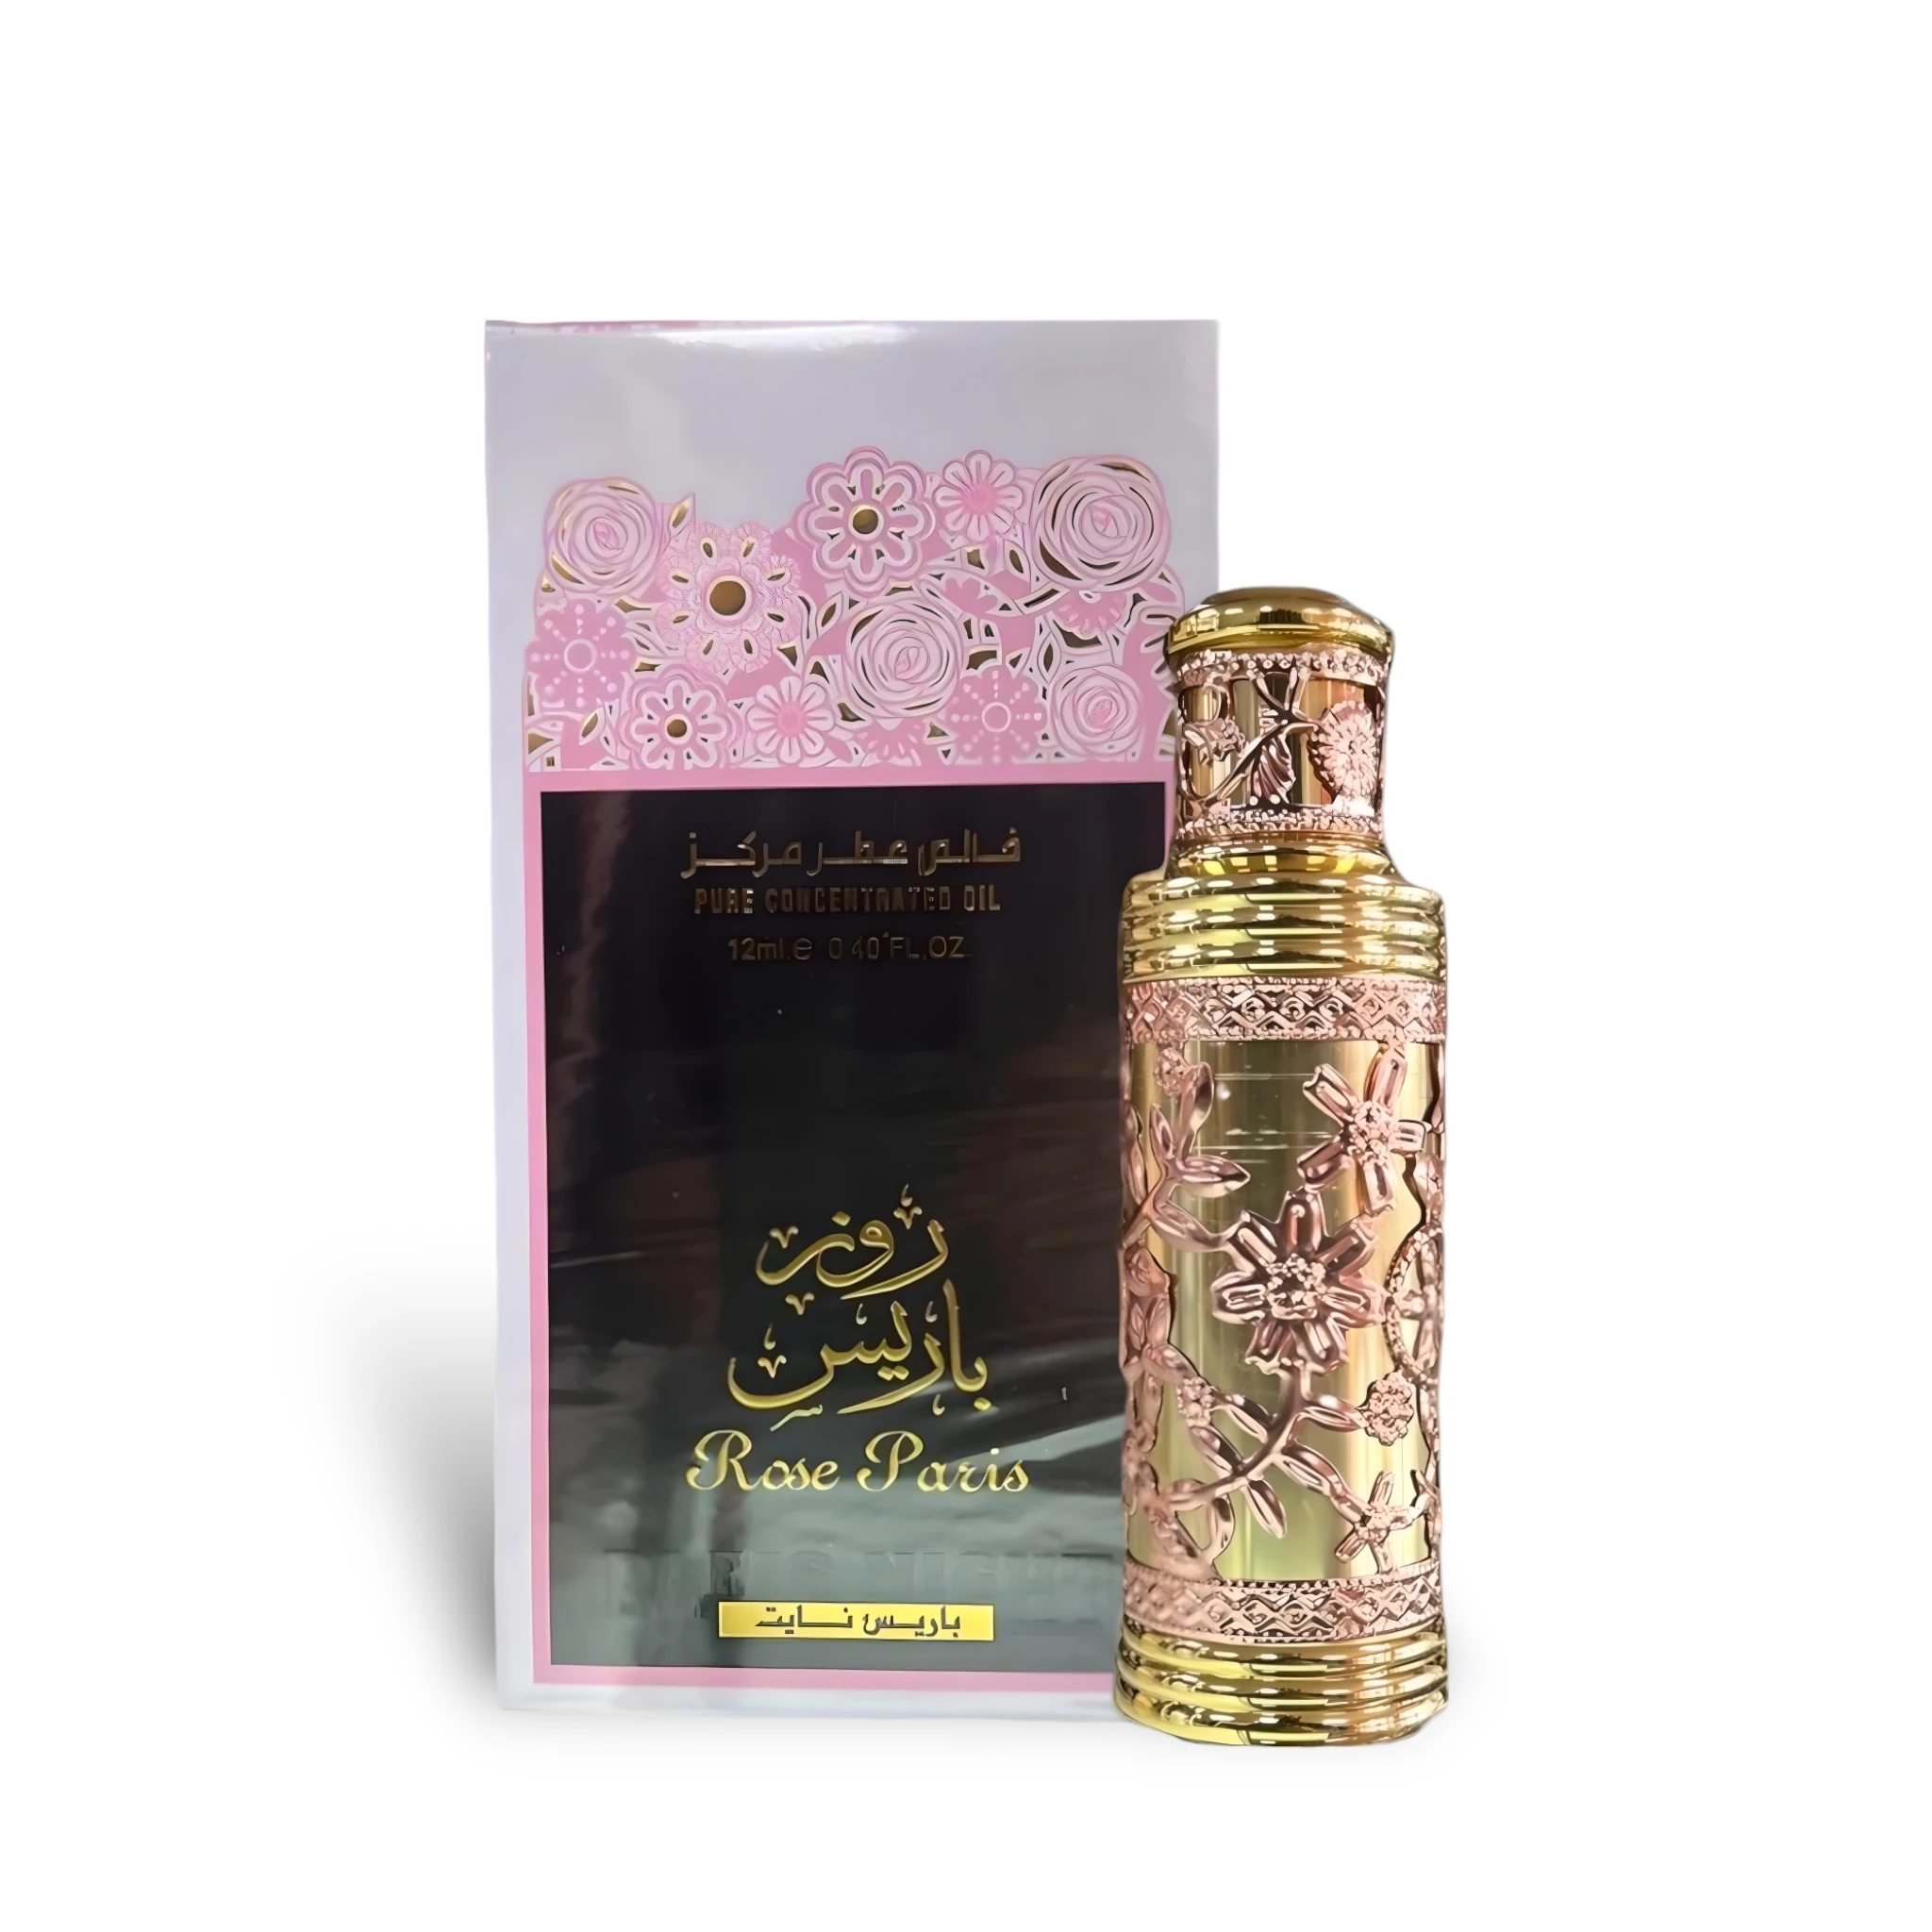 Rose Paris Concentrated Perfume Oil 12Ml (Attar) By Ard Al Zaafaran